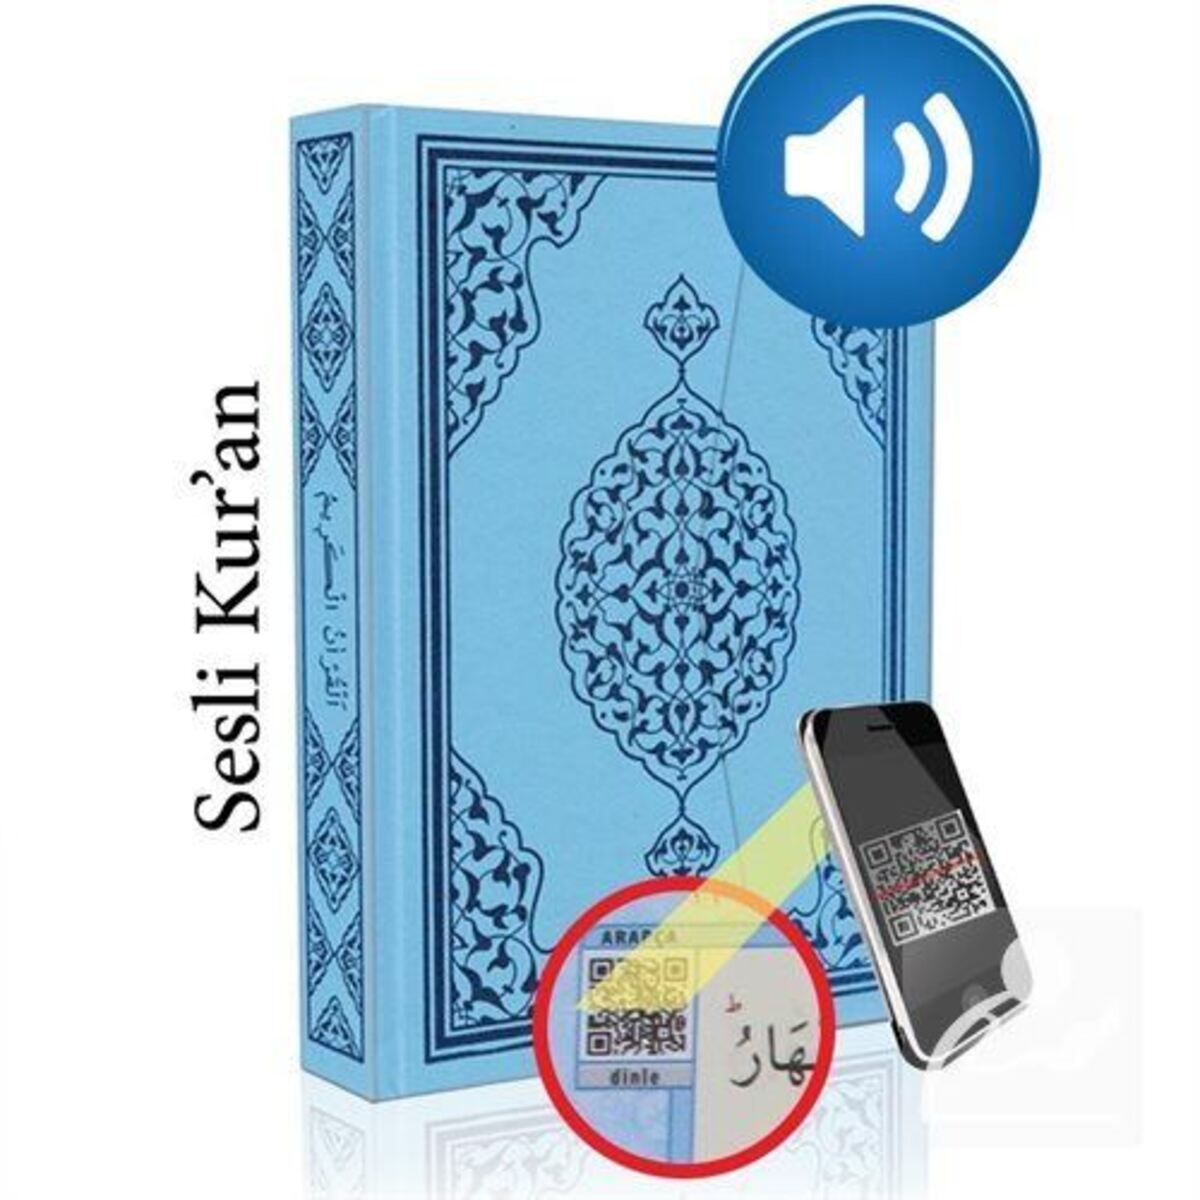 Merve Yayınları Kur'an-ı Kerim Bilgisayar Hatlı Mavi Renk Rahle Boy (KUR-AN 013) Sesli Kur-an